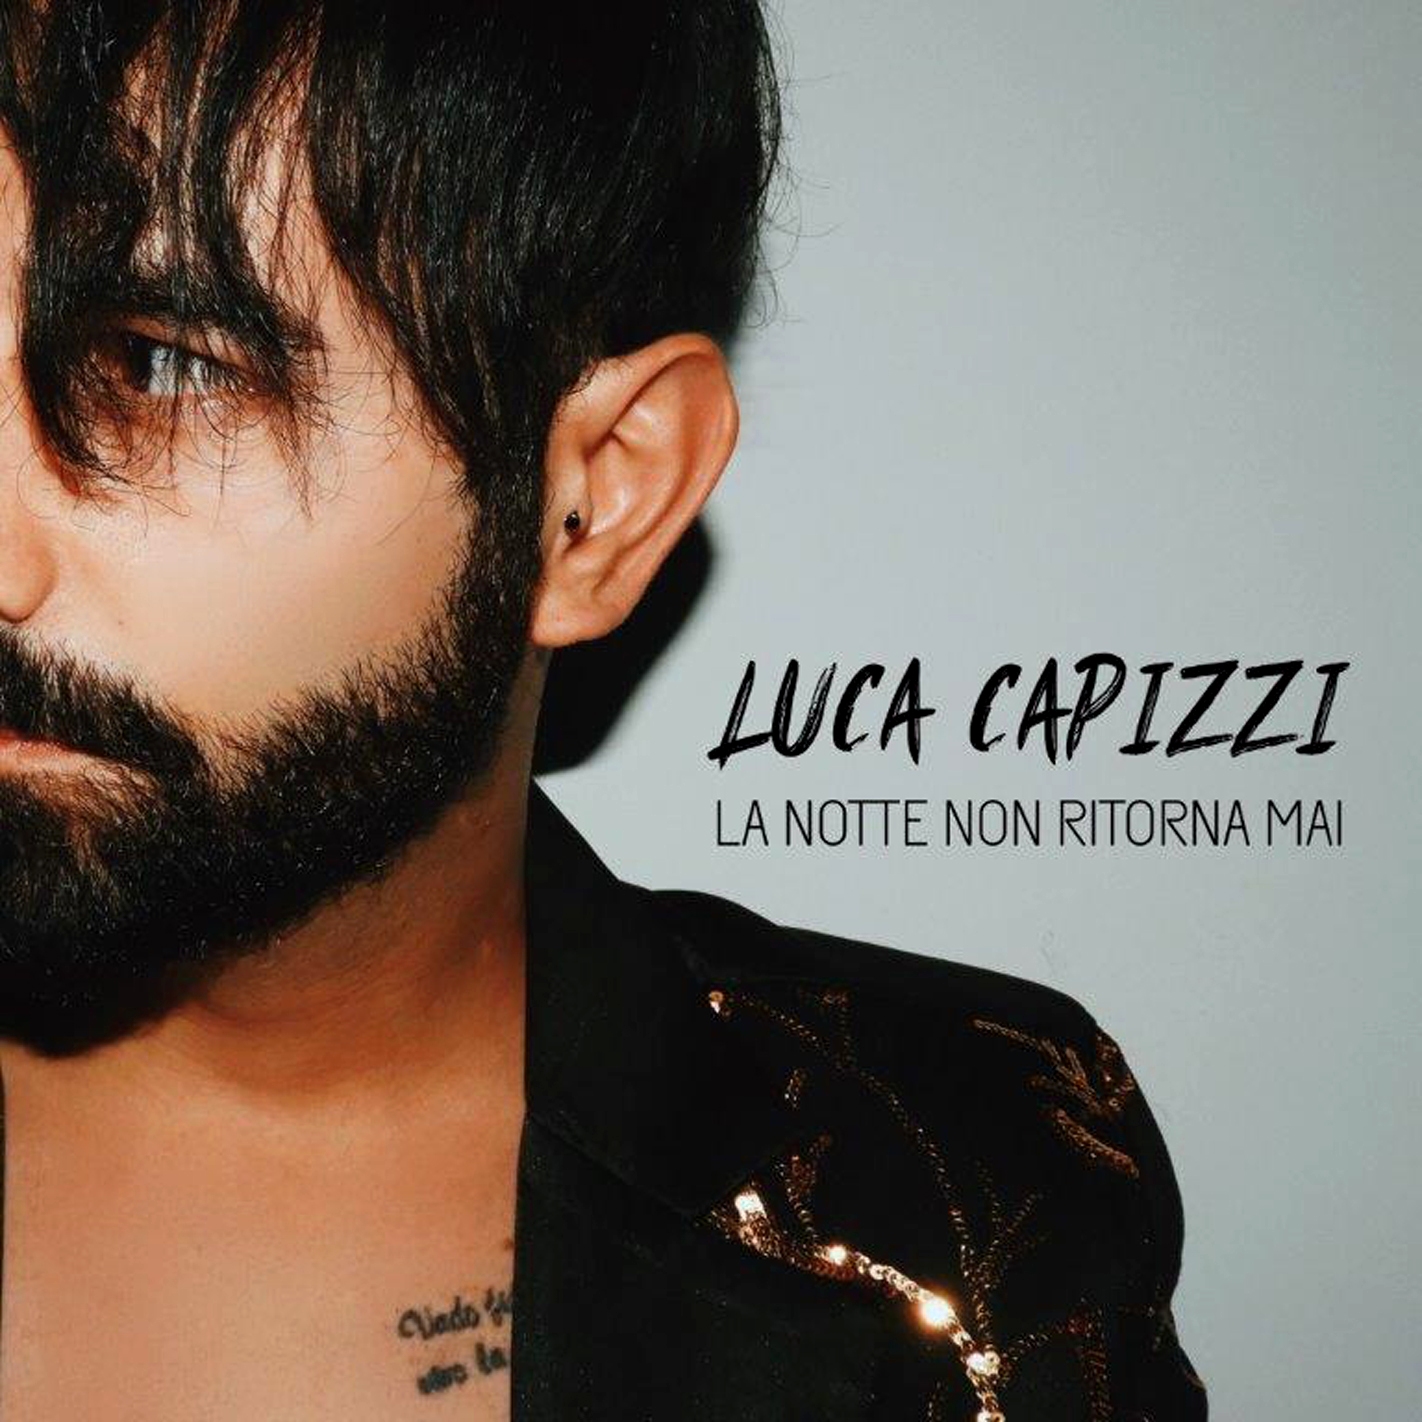 Read more about the article L’amore su WhatsApp nel nuovo singolo di Luca Capizzi “La notte non ritorna mai”